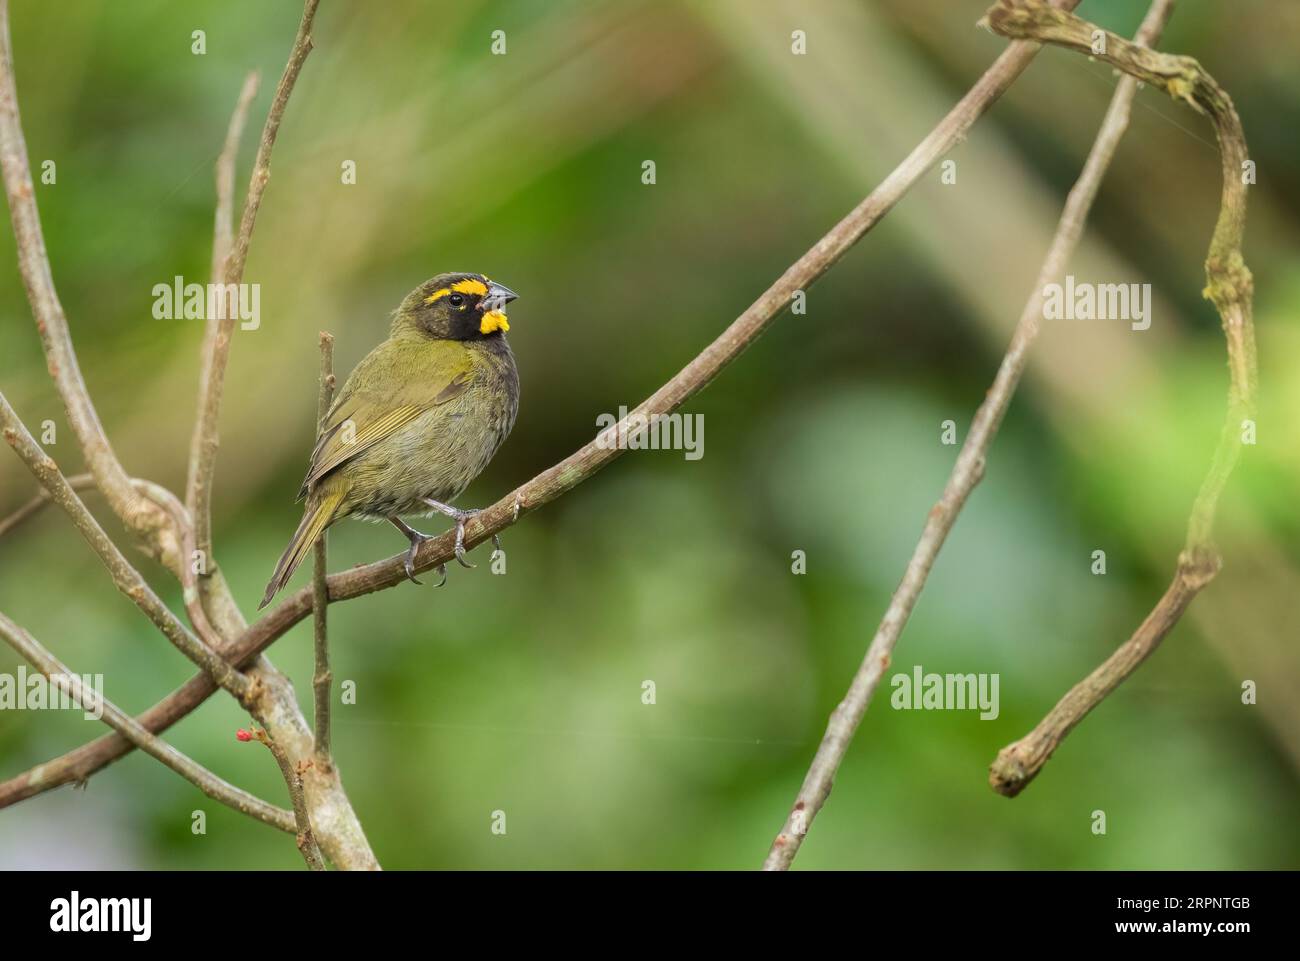 Grassquit à face jaune - Tiaris olivaceus, petit oiseau passine coloré des bois et forêts d'Amérique latine, Panama. Banque D'Images